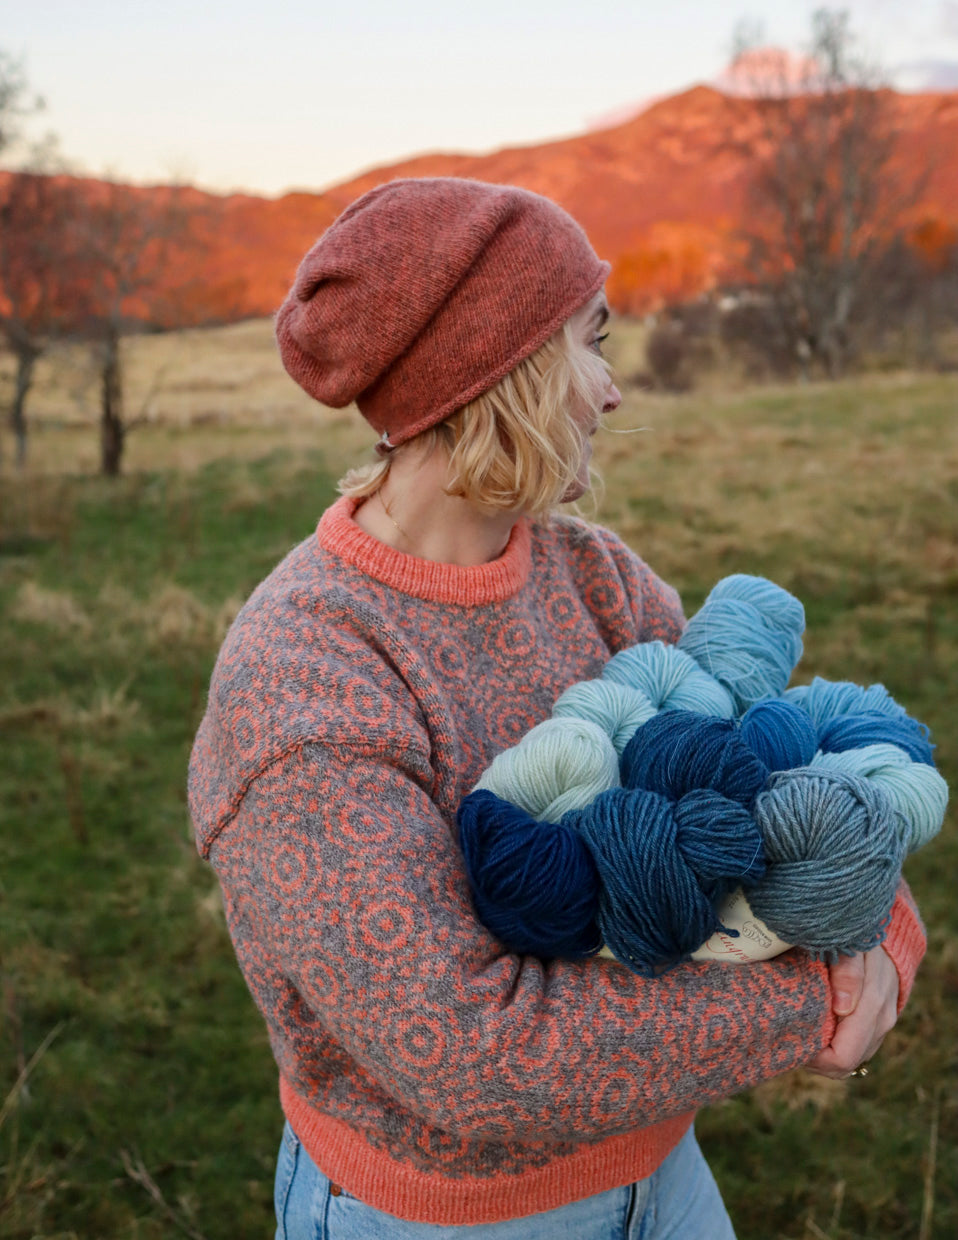 Emma sweater, 2-ply knitting kit